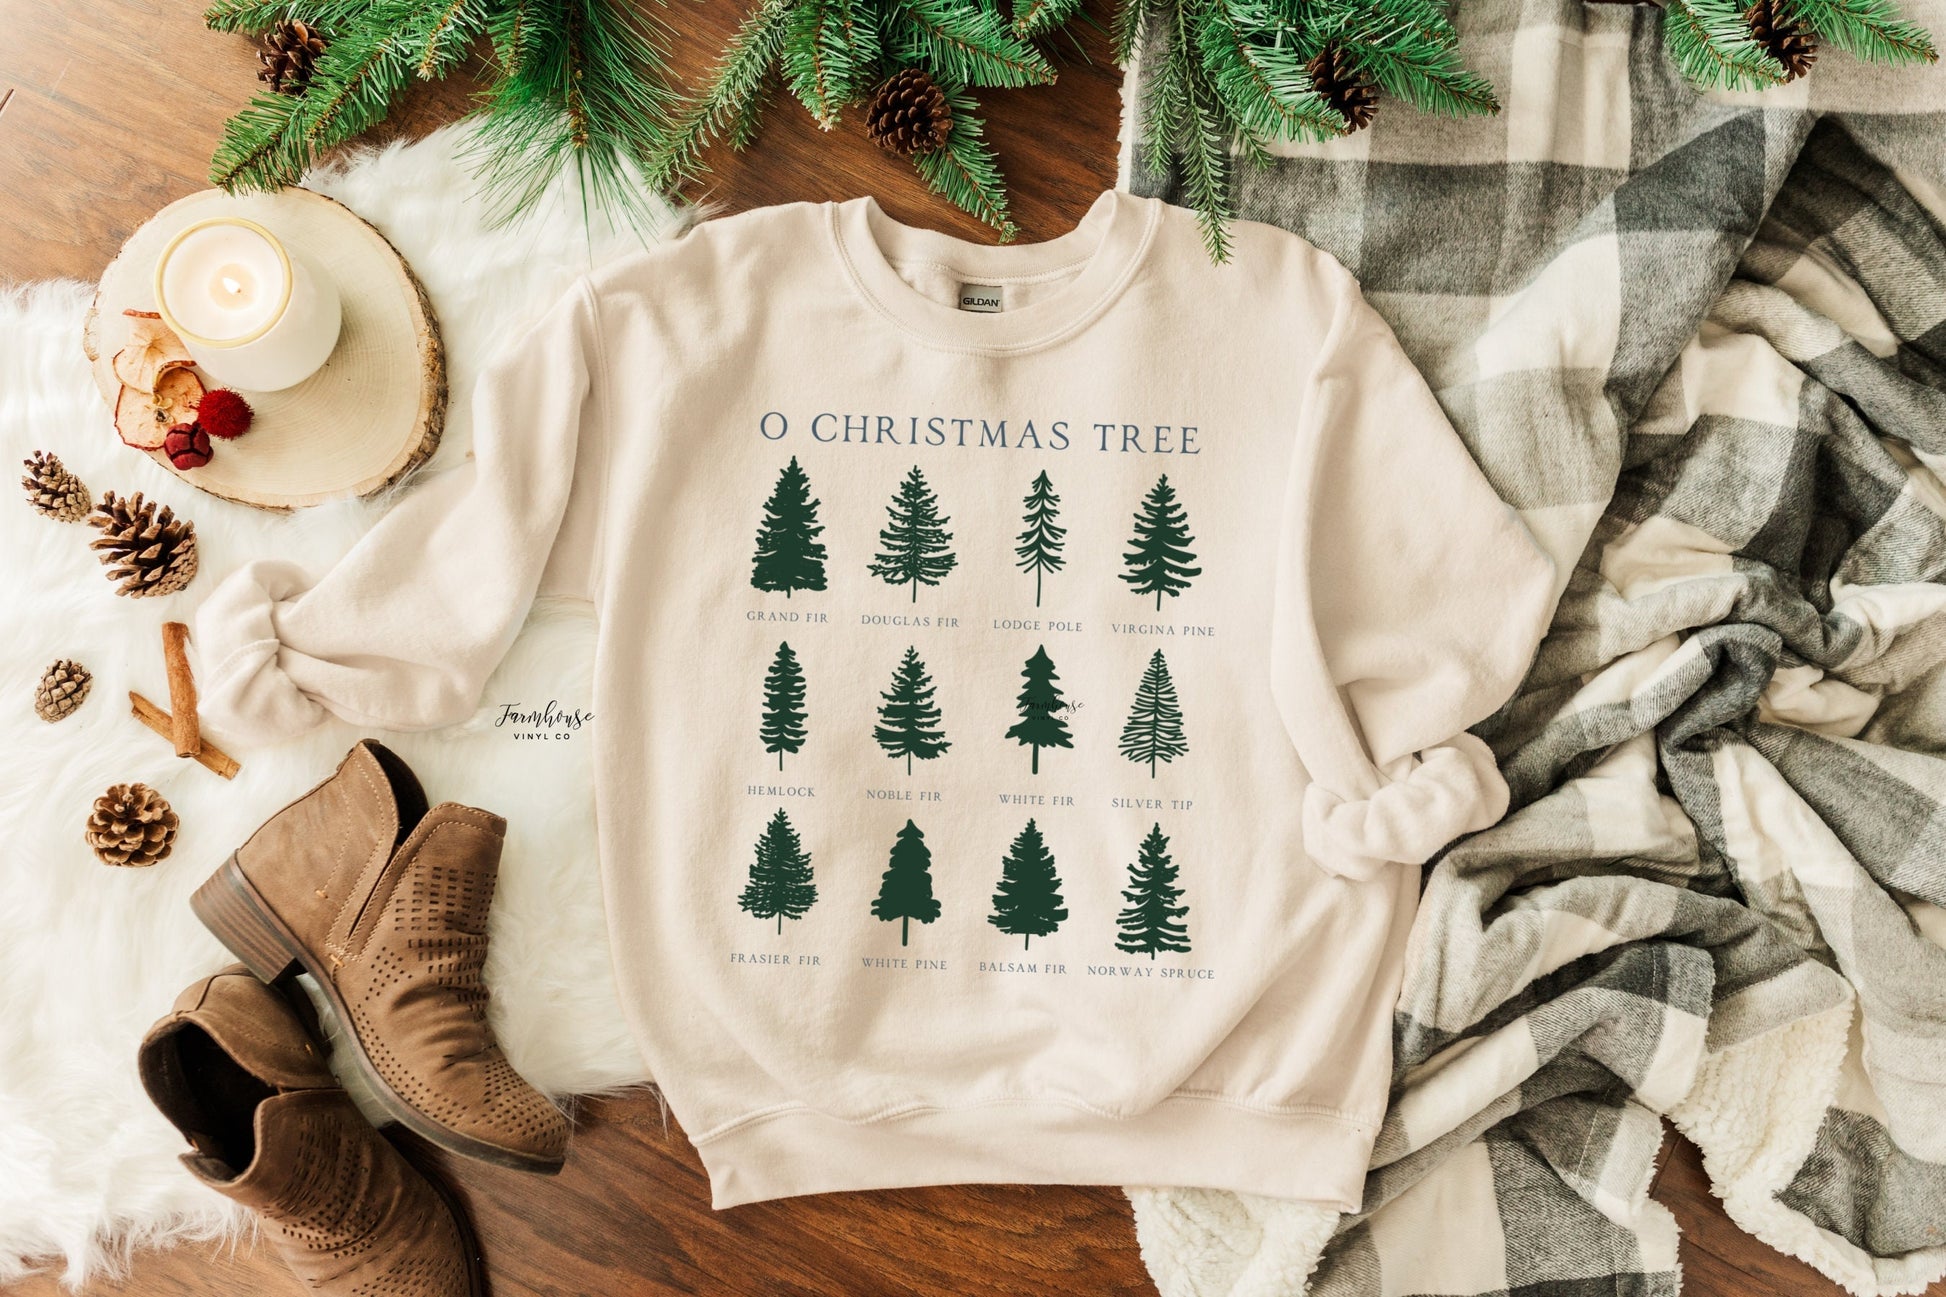 O Christmas Tree Elegant Sweatshirt Shirt / Chirstmas TShirt / Christmas Holiday Trees Shirt / Pine Tree Typers Sweatshirt / Xmas Tee Shirt - Farmhouse Vinyl Co